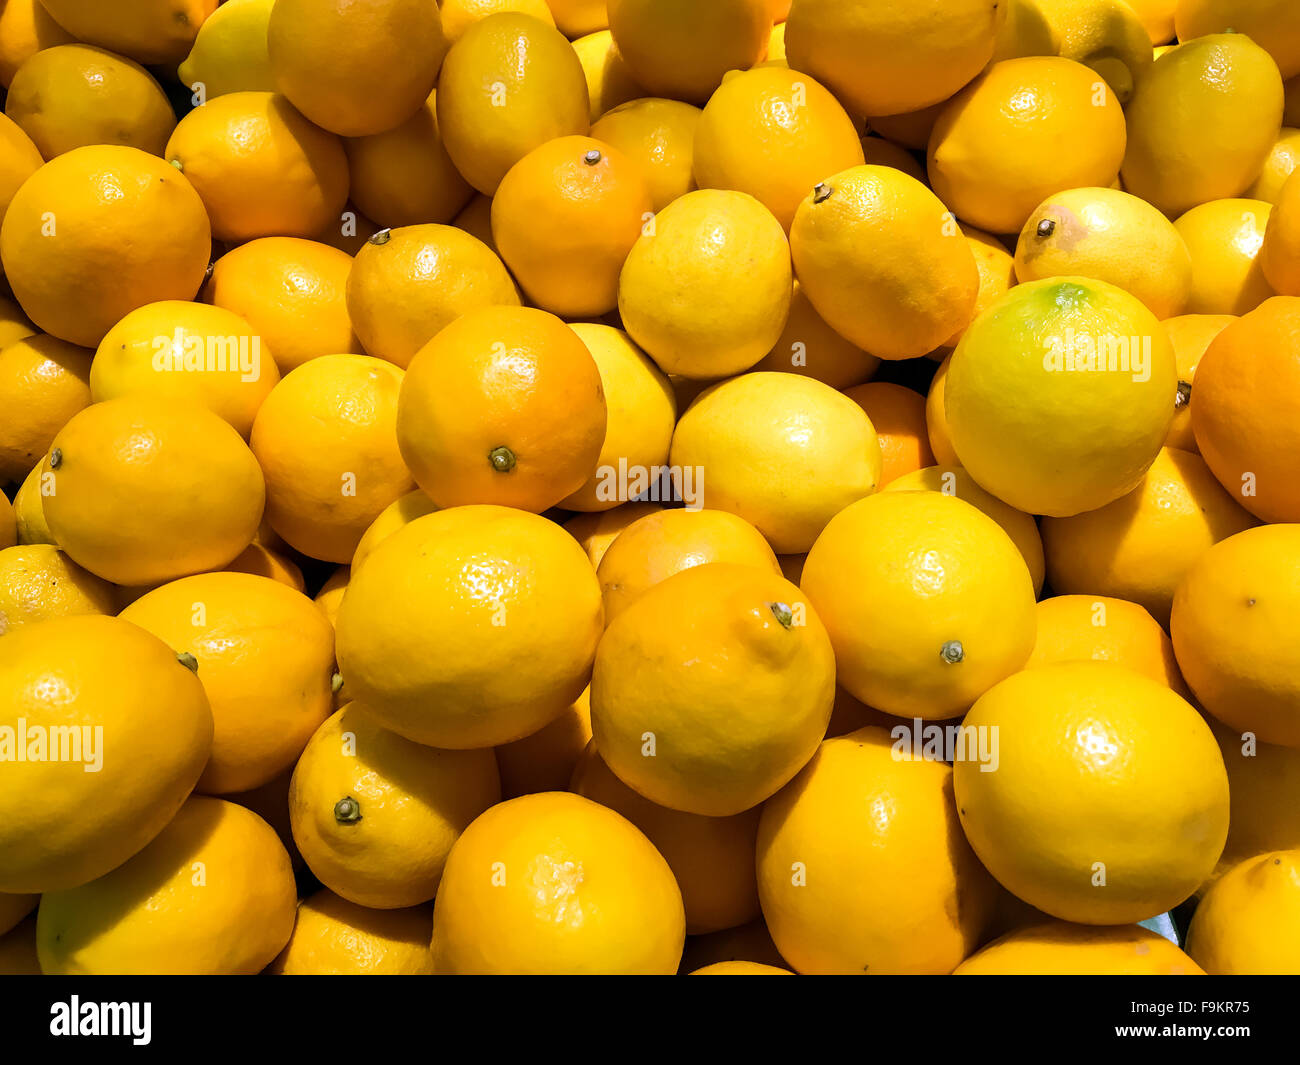 Group Of Lemons In Market Stock Photo